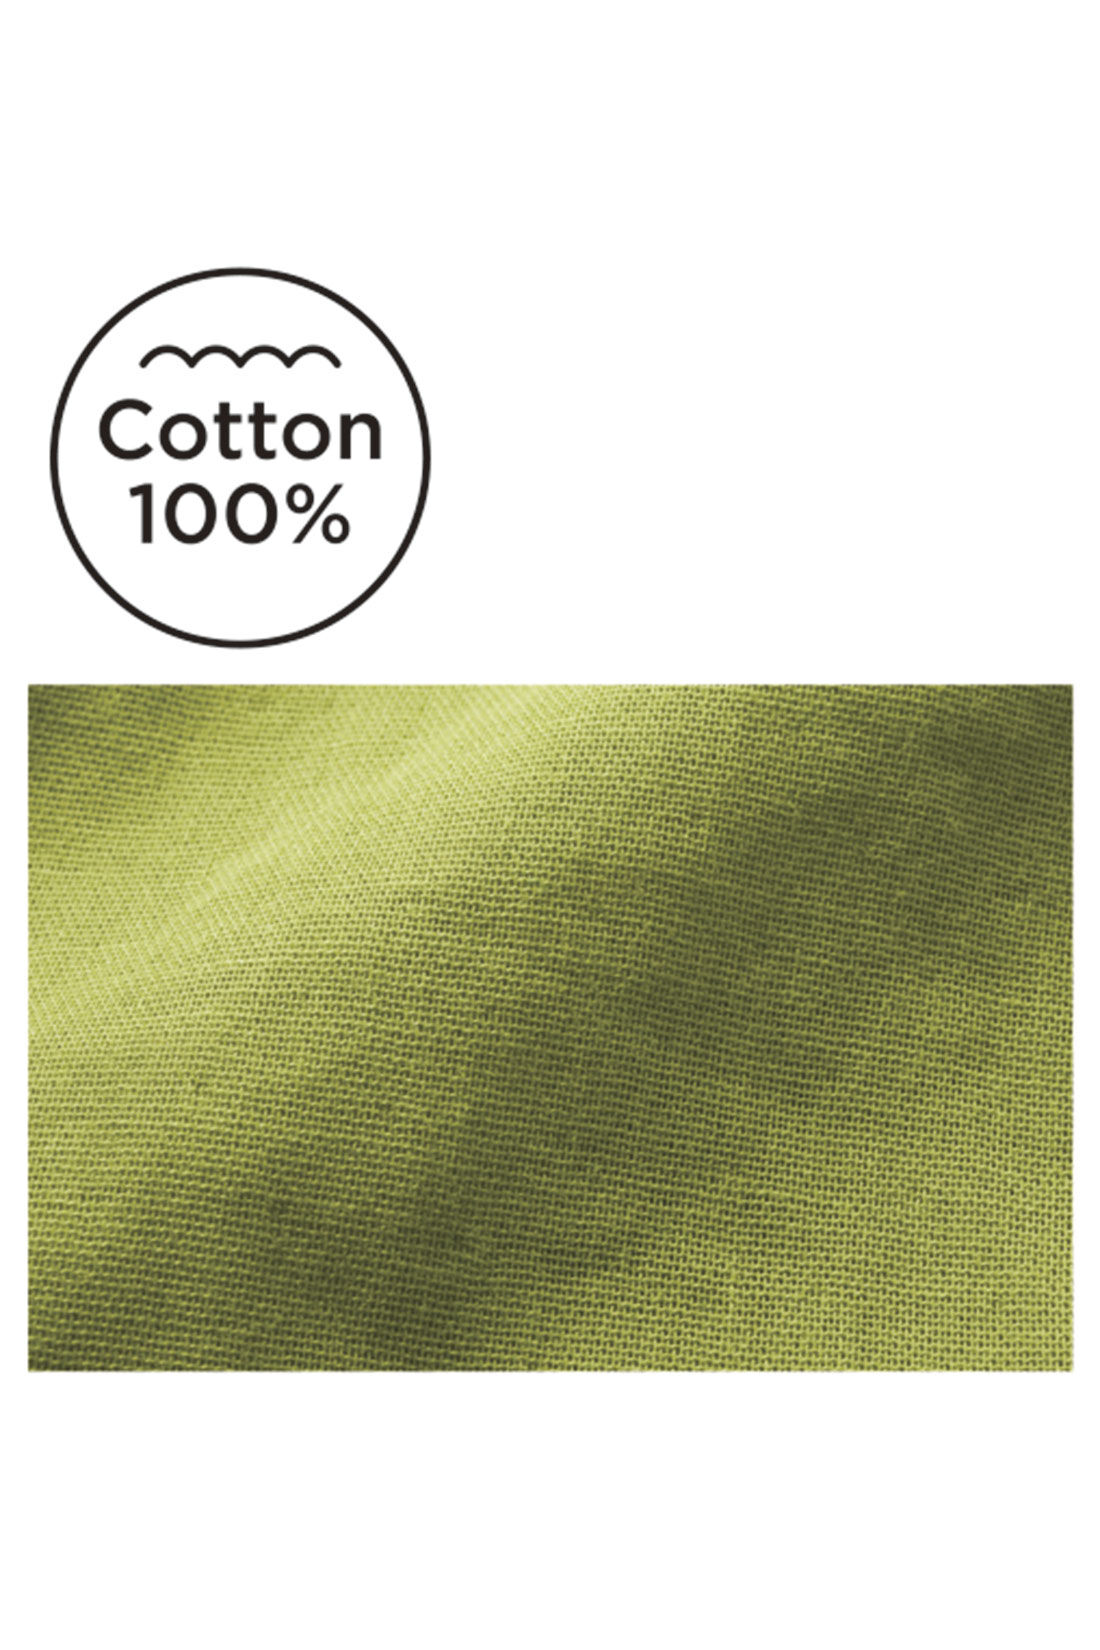 Live in  comfort|Live love cottonプロジェクト　リブ イン コンフォート　やわらかダブルガーゼにうっとり オーガニックコットンの上品フレンチブラウス〈オフホワイト〉|洗うたびにくったり感が増す、やわらかなダブルガーゼ素材。